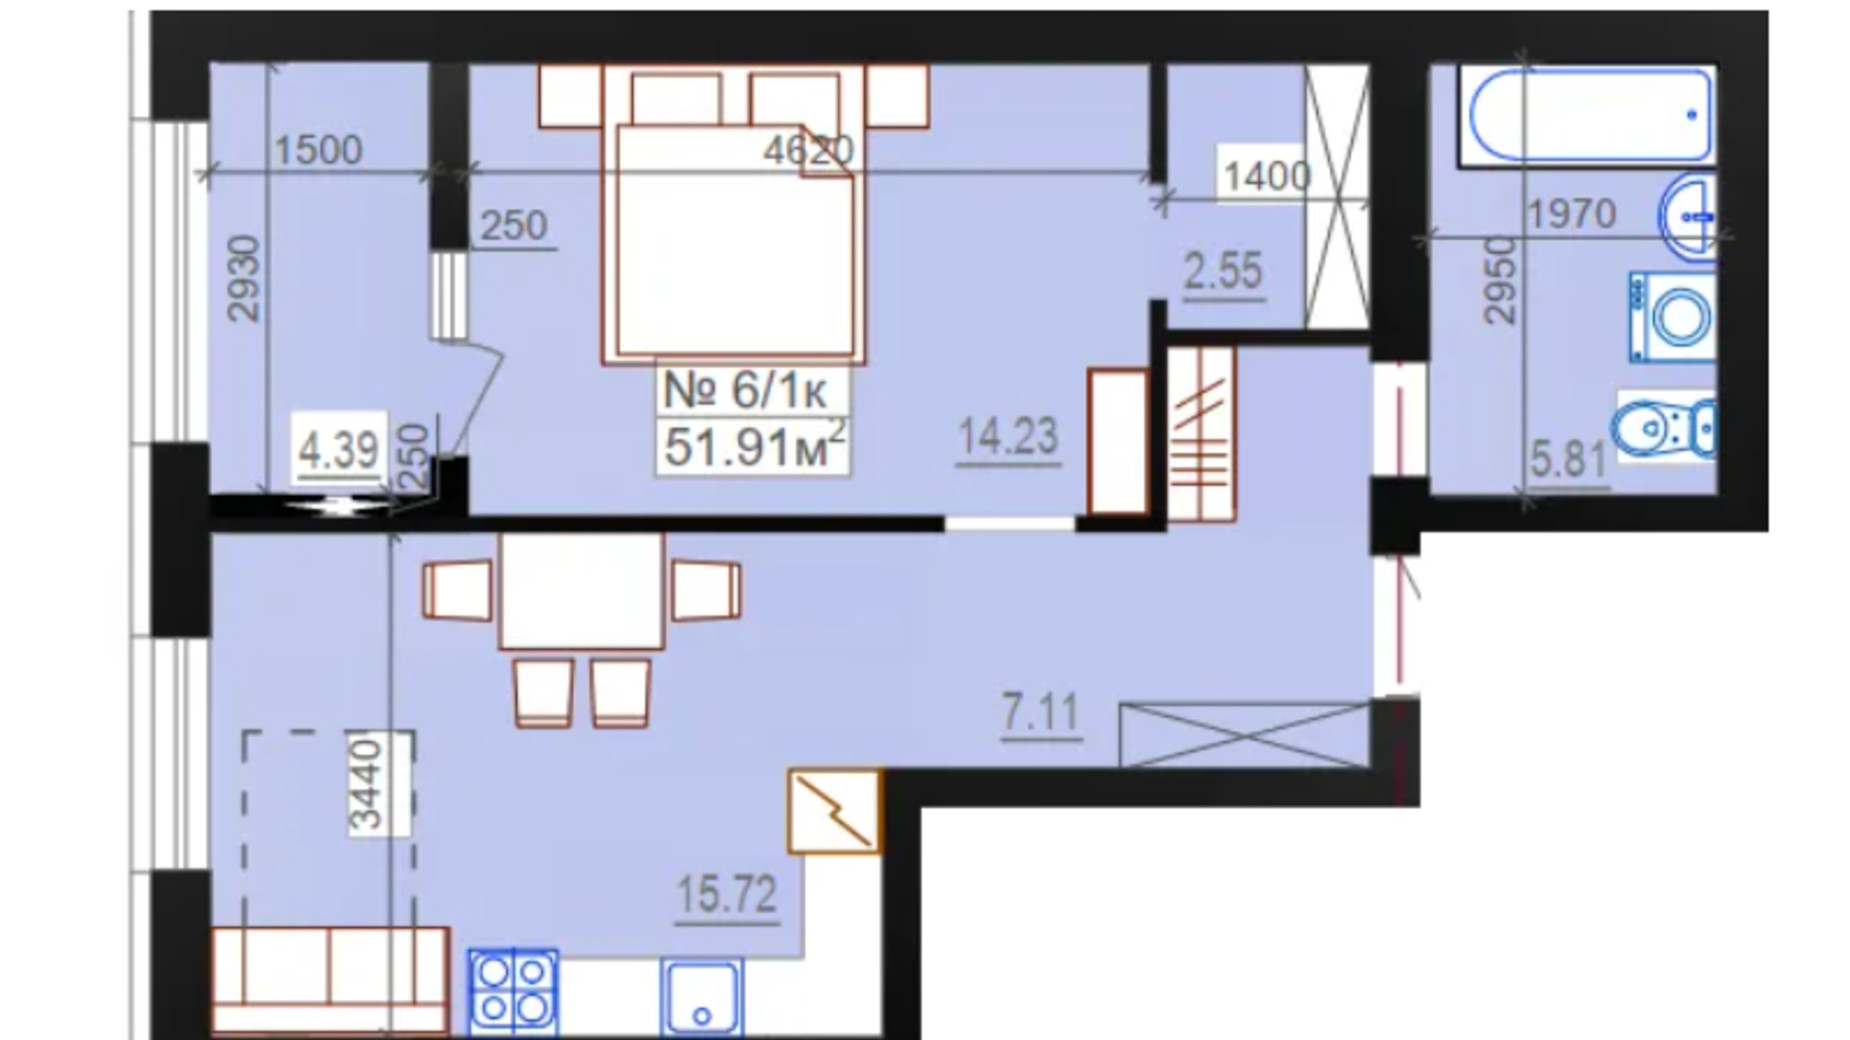 Планировка 1-комнатной квартиры в ЖК Миланж 51.91 м², фото 548248